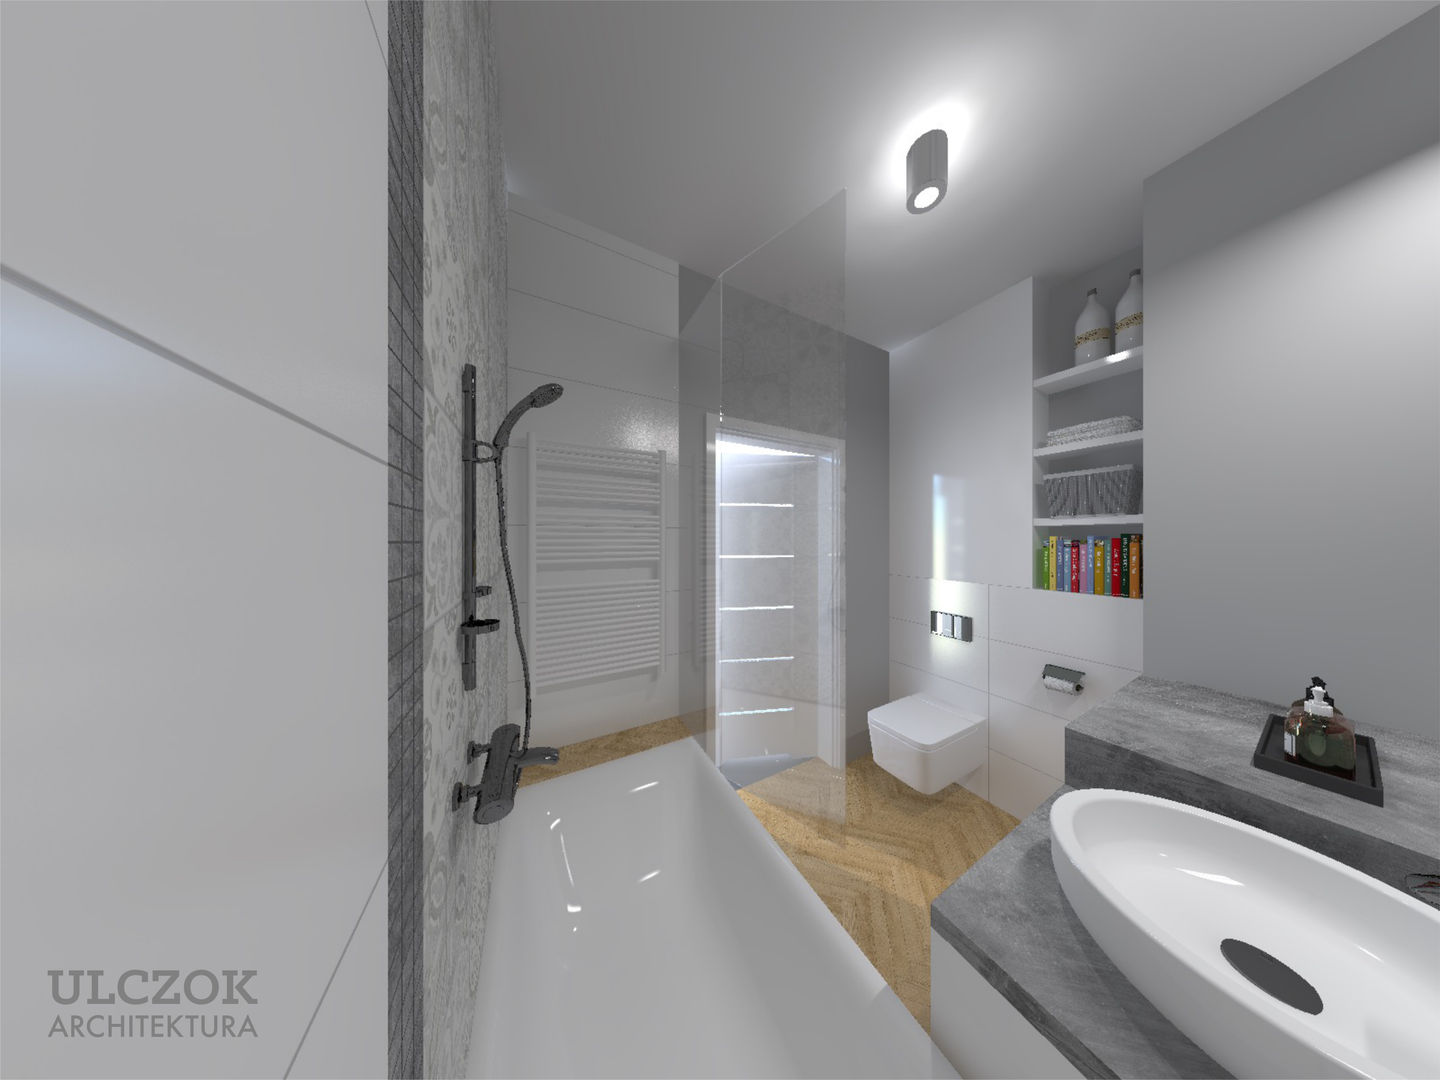 Projekt małej łazienki, Ulczok Architektura Ulczok Architektura Modern bathroom